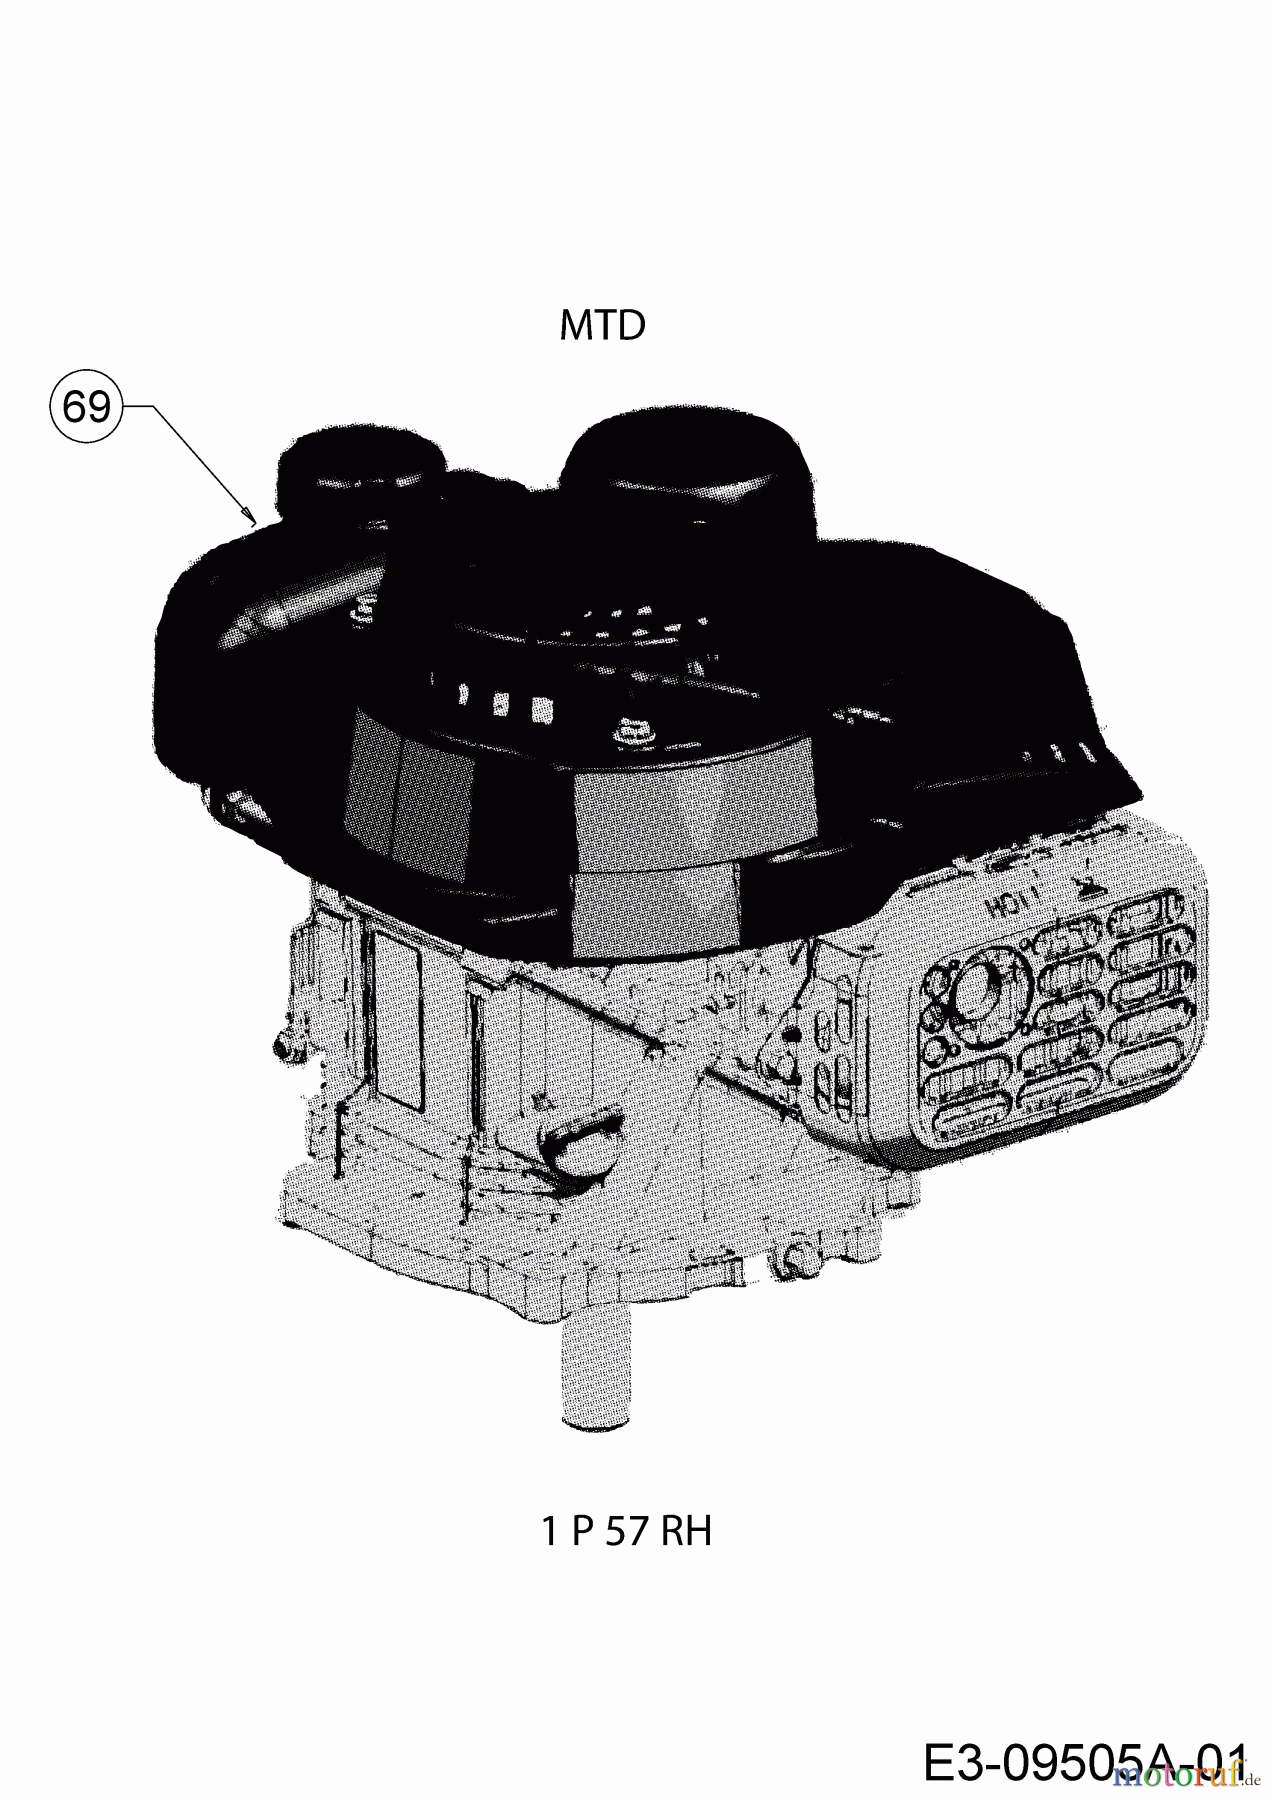  MTD Petrol mower DL 46 P 11A-J1SJ677  (2016) Engine MTD